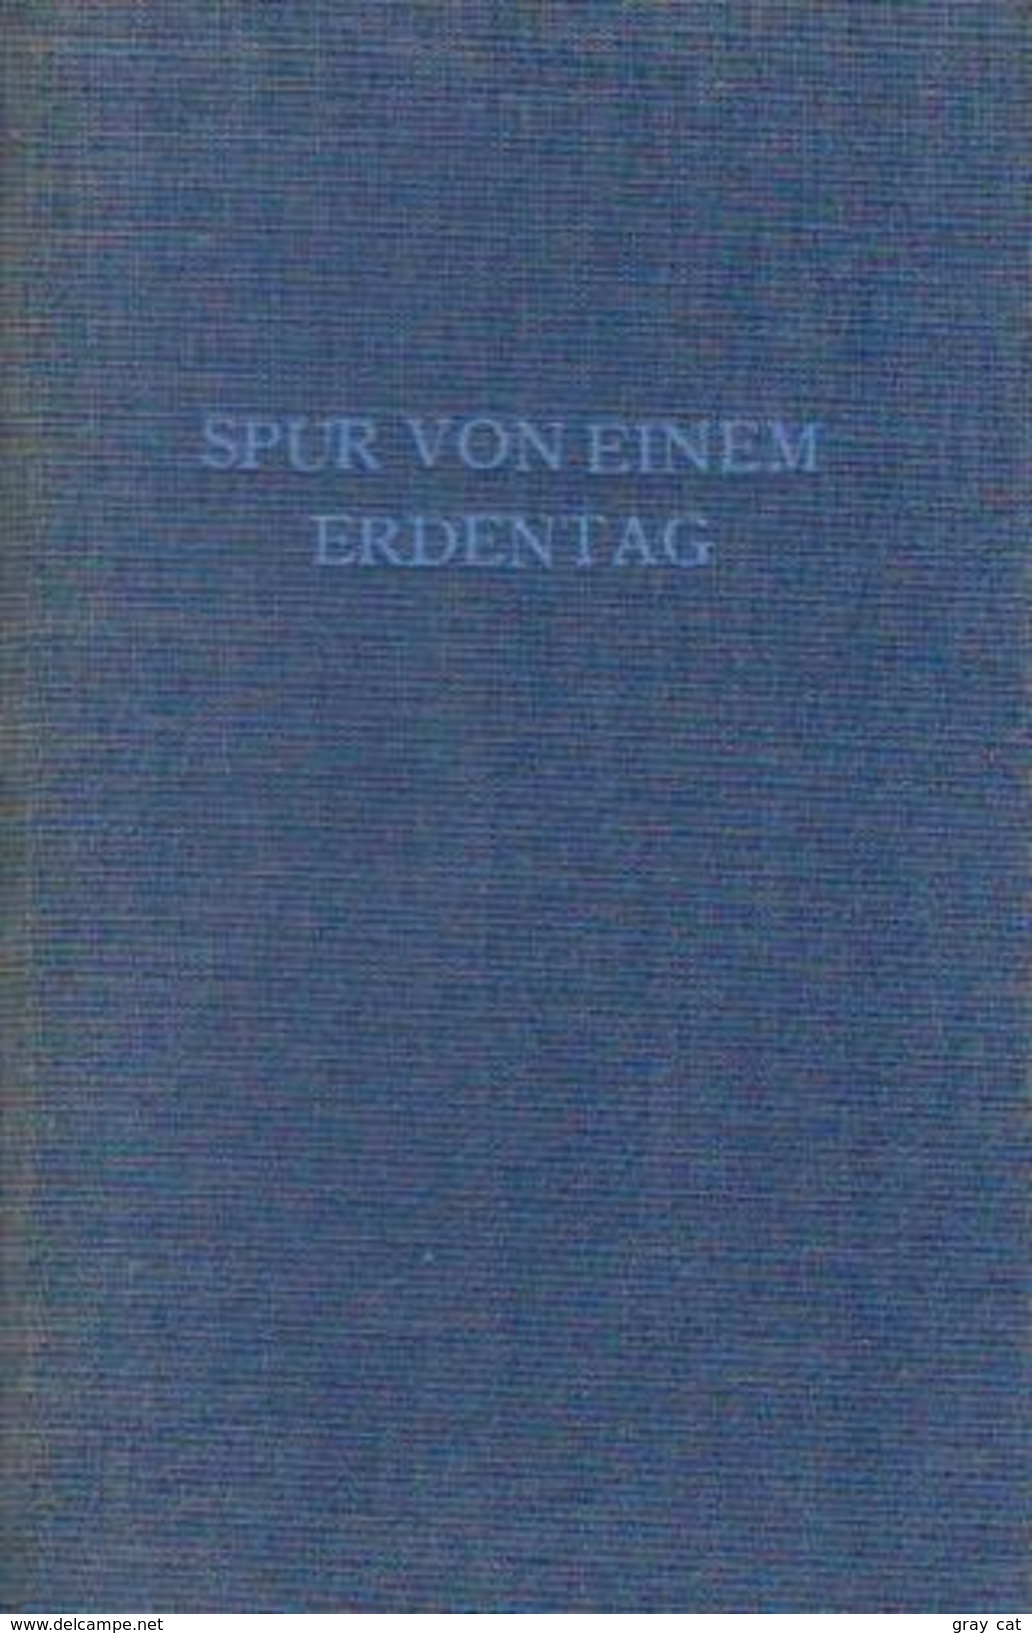 Spur Von Einem Erdentag By Baginsky, Albert - Old Books